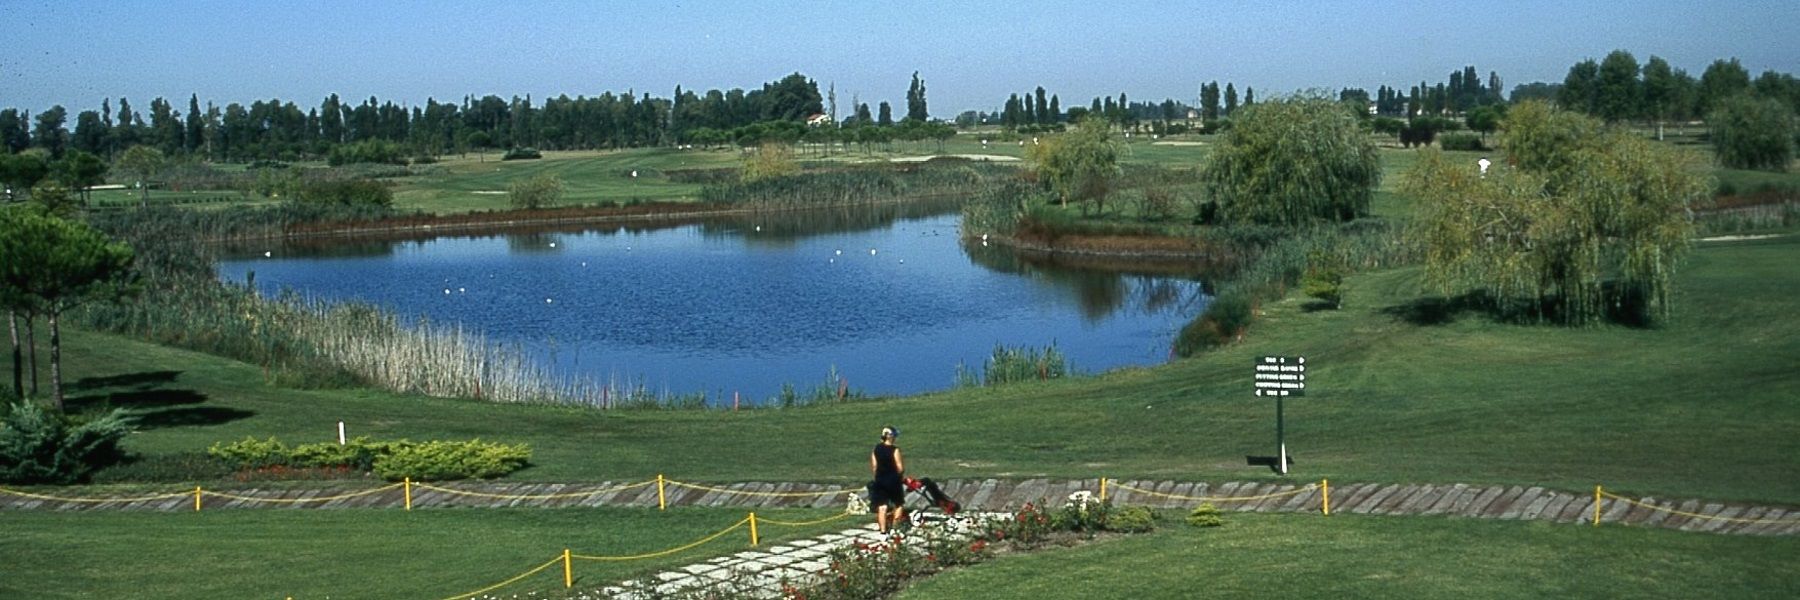 Adriatic Golf Club Cervia - Gli appuntamenti di agosto